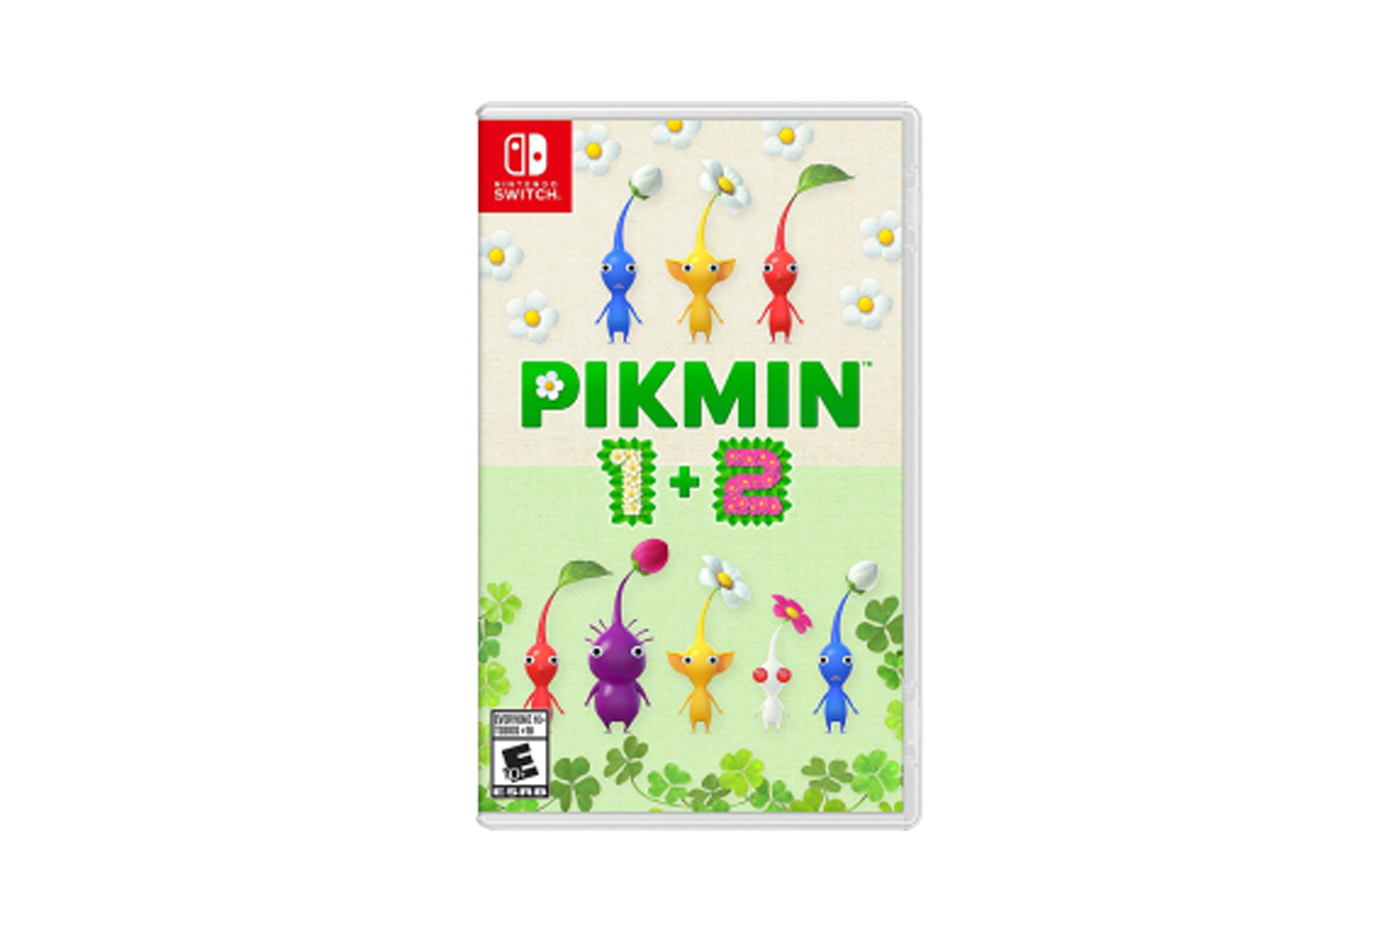 Pikmin 4 (Switch) au meilleur prix - Comparez les offres de Jeux